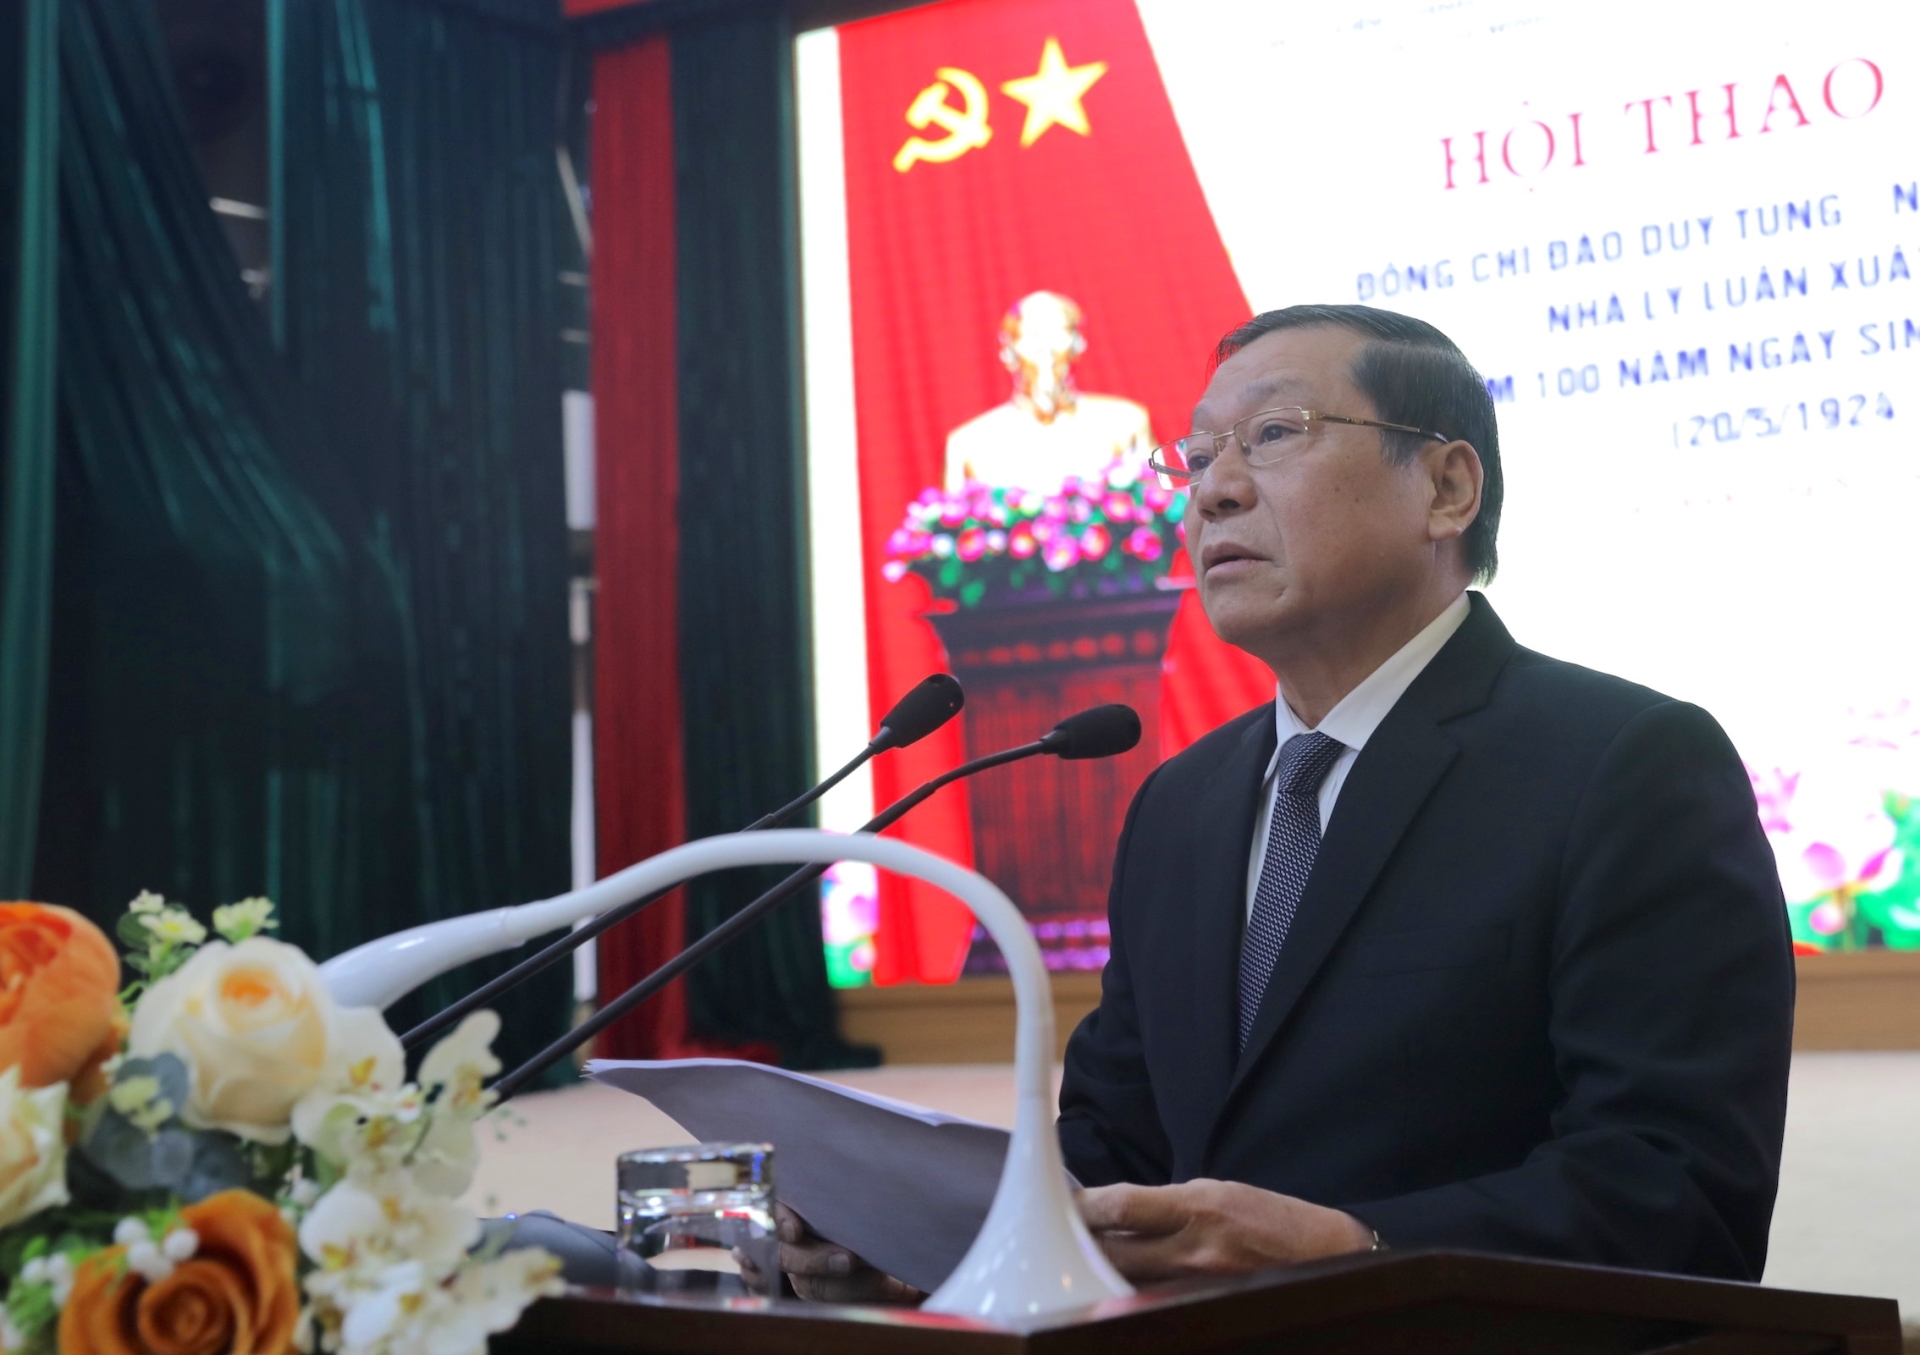 Đồng chí Lại Xuân Môn, Uỷ viên Trung ương Đảng, Phó Trưởng ban Thường trực Ban Tuyên giáo Trung ương phát biểu tại hội thảo.